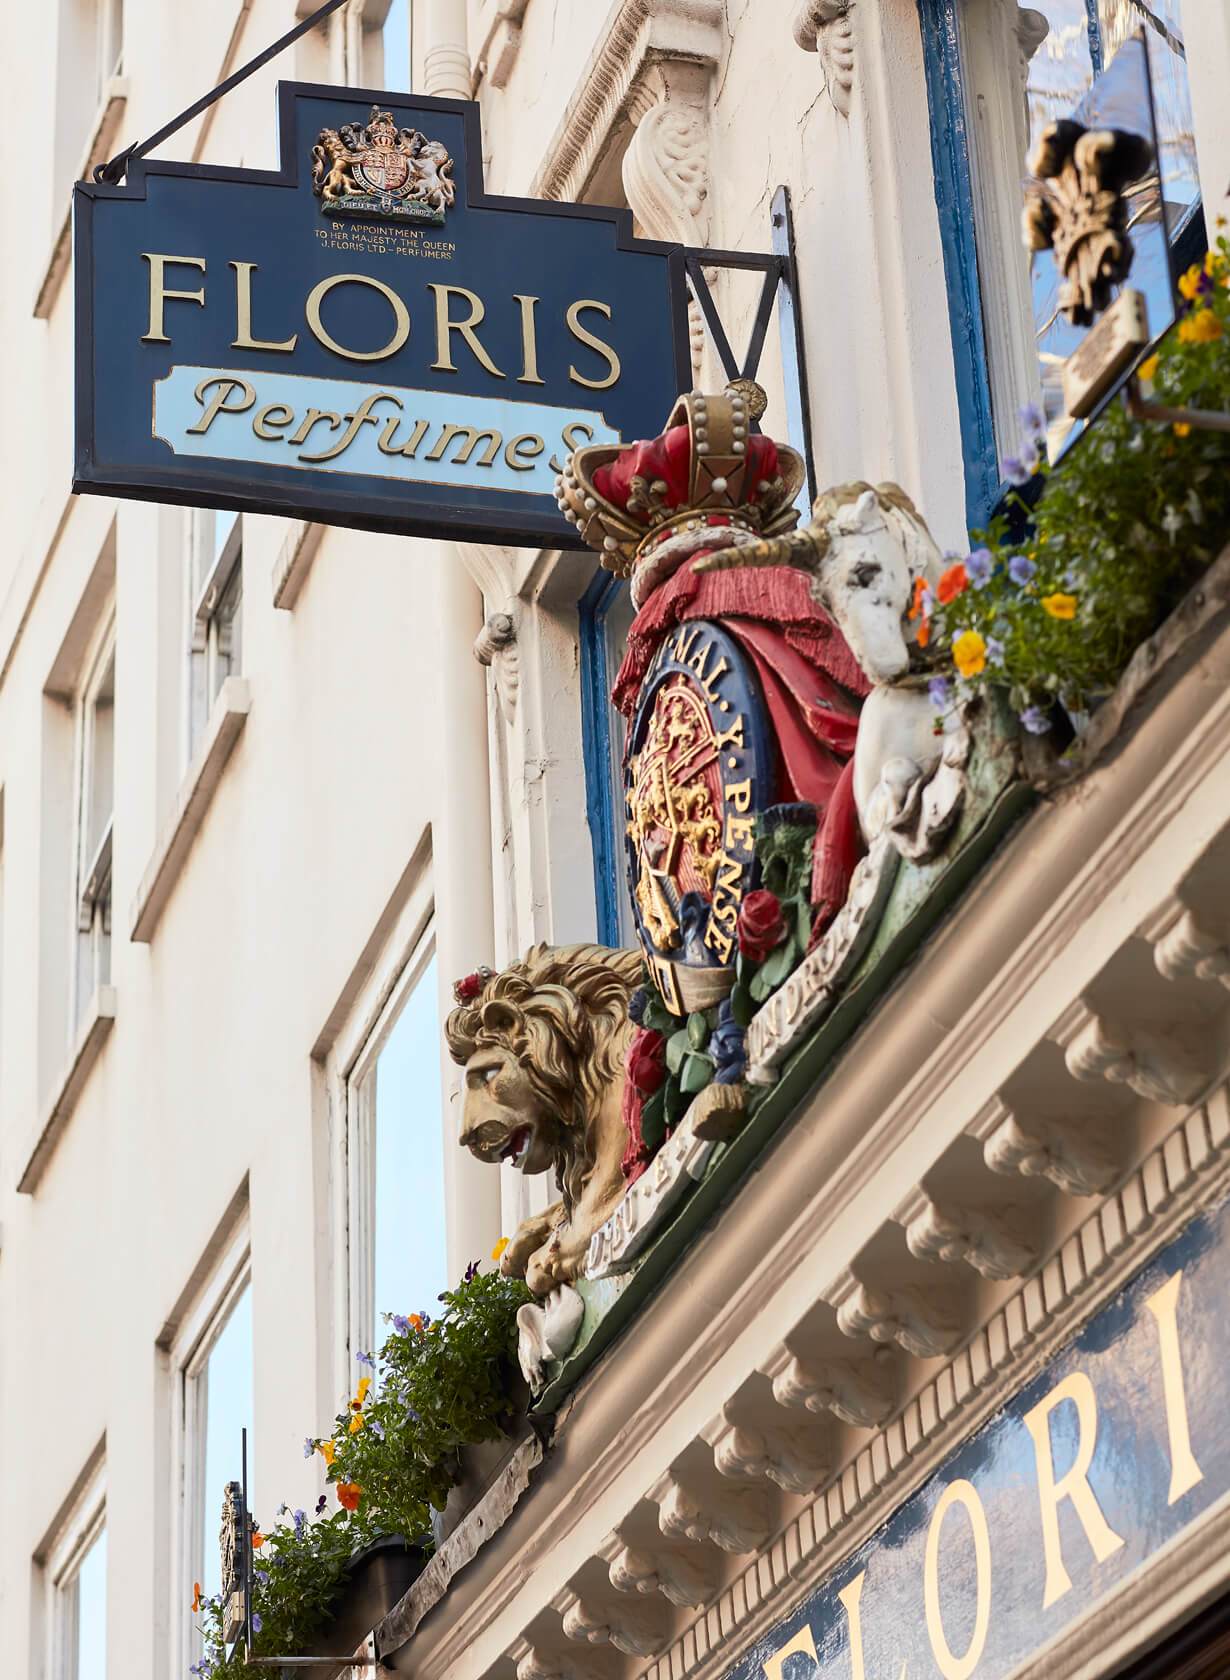 Floris Perfumes sign outside London shop